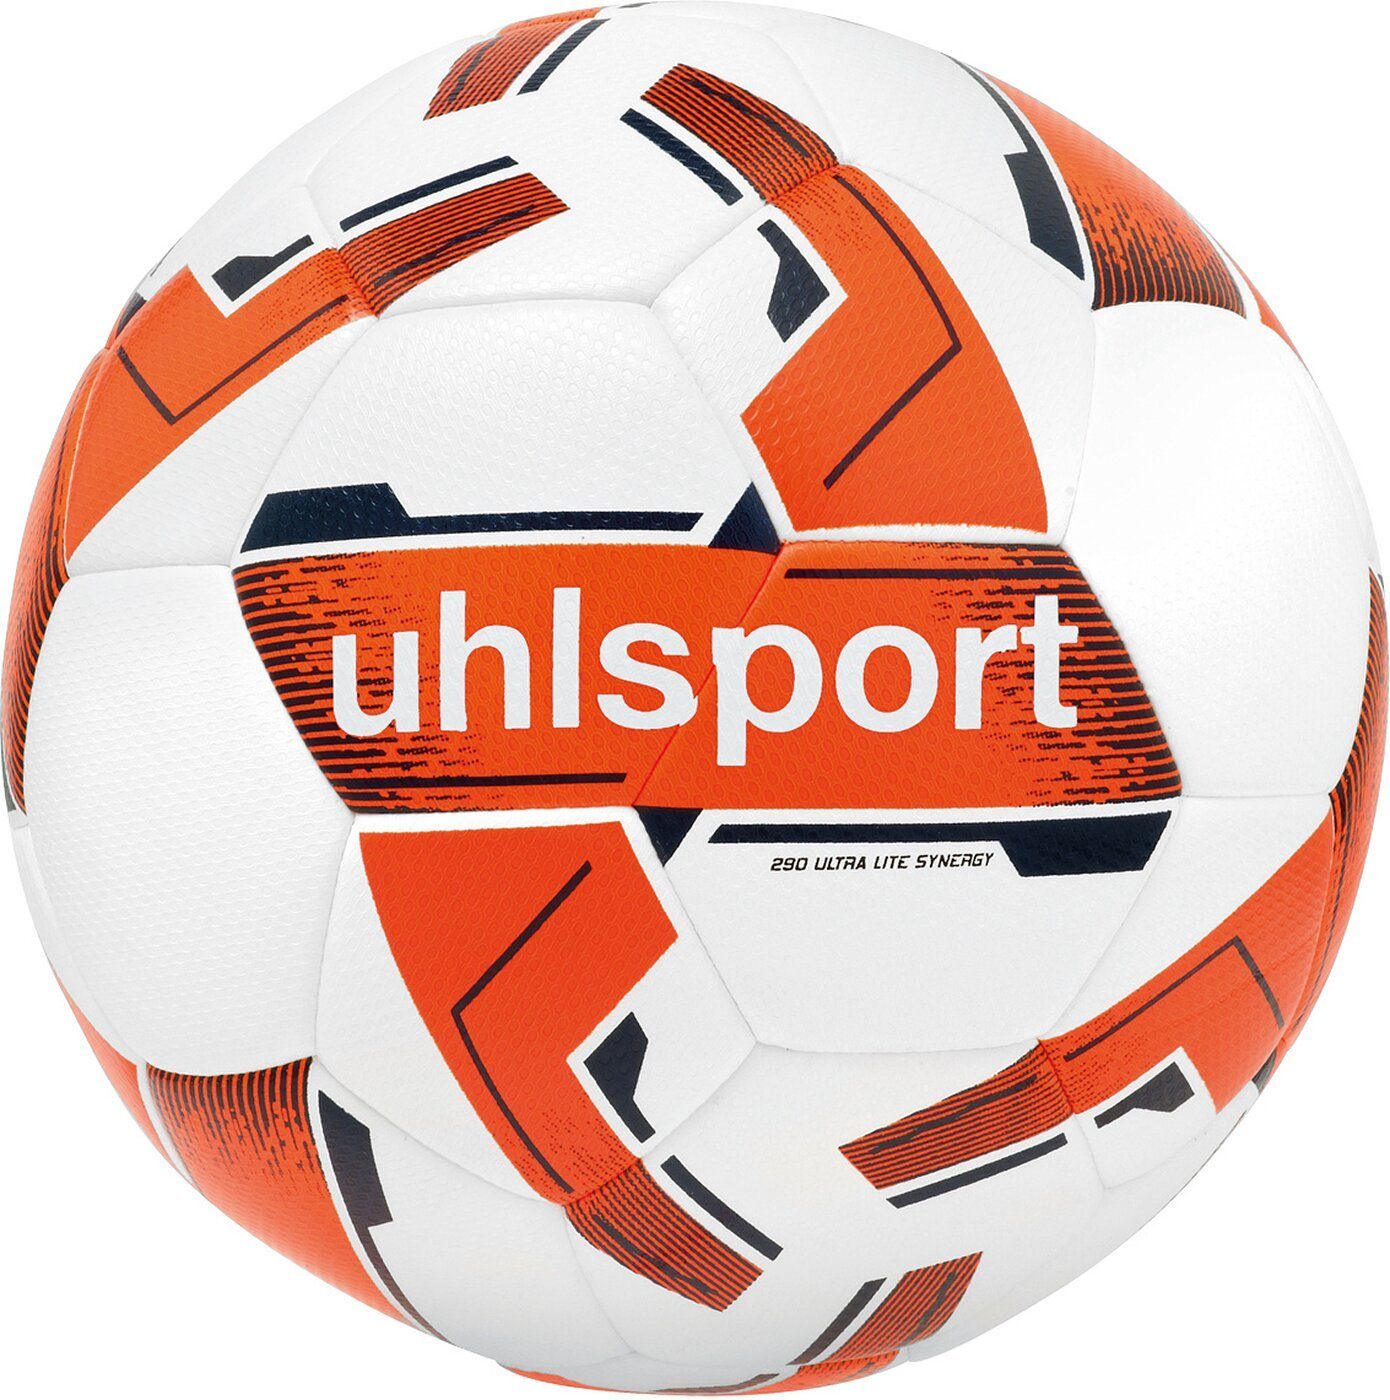 uhlsport Fußball 290 ULTRA LITE weiß/fluo 02 SYNERGY orange/marine